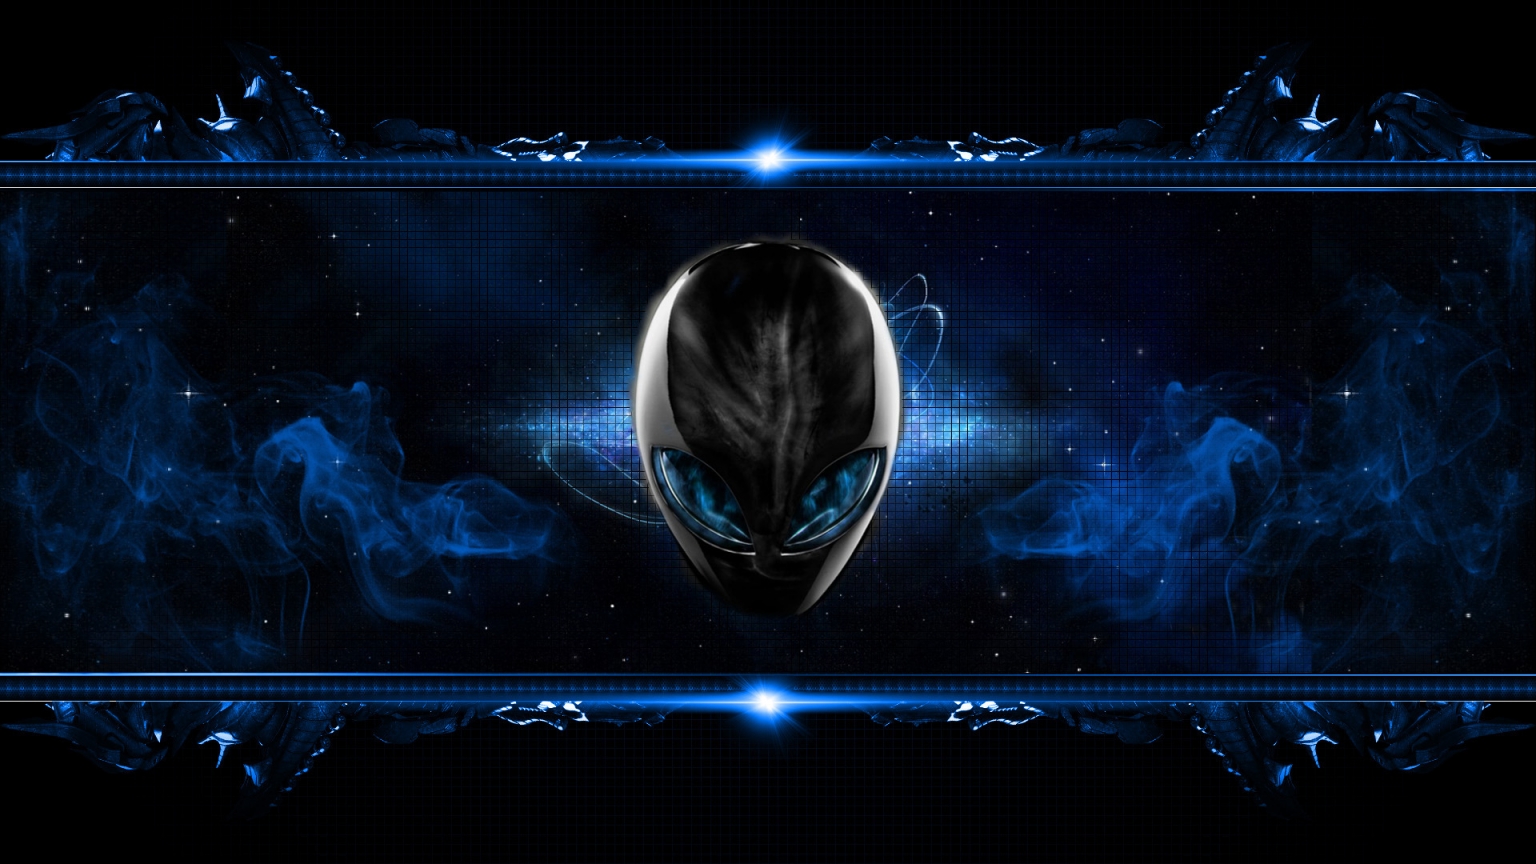 Blue Alien for 1536 x 864 HDTV resolution